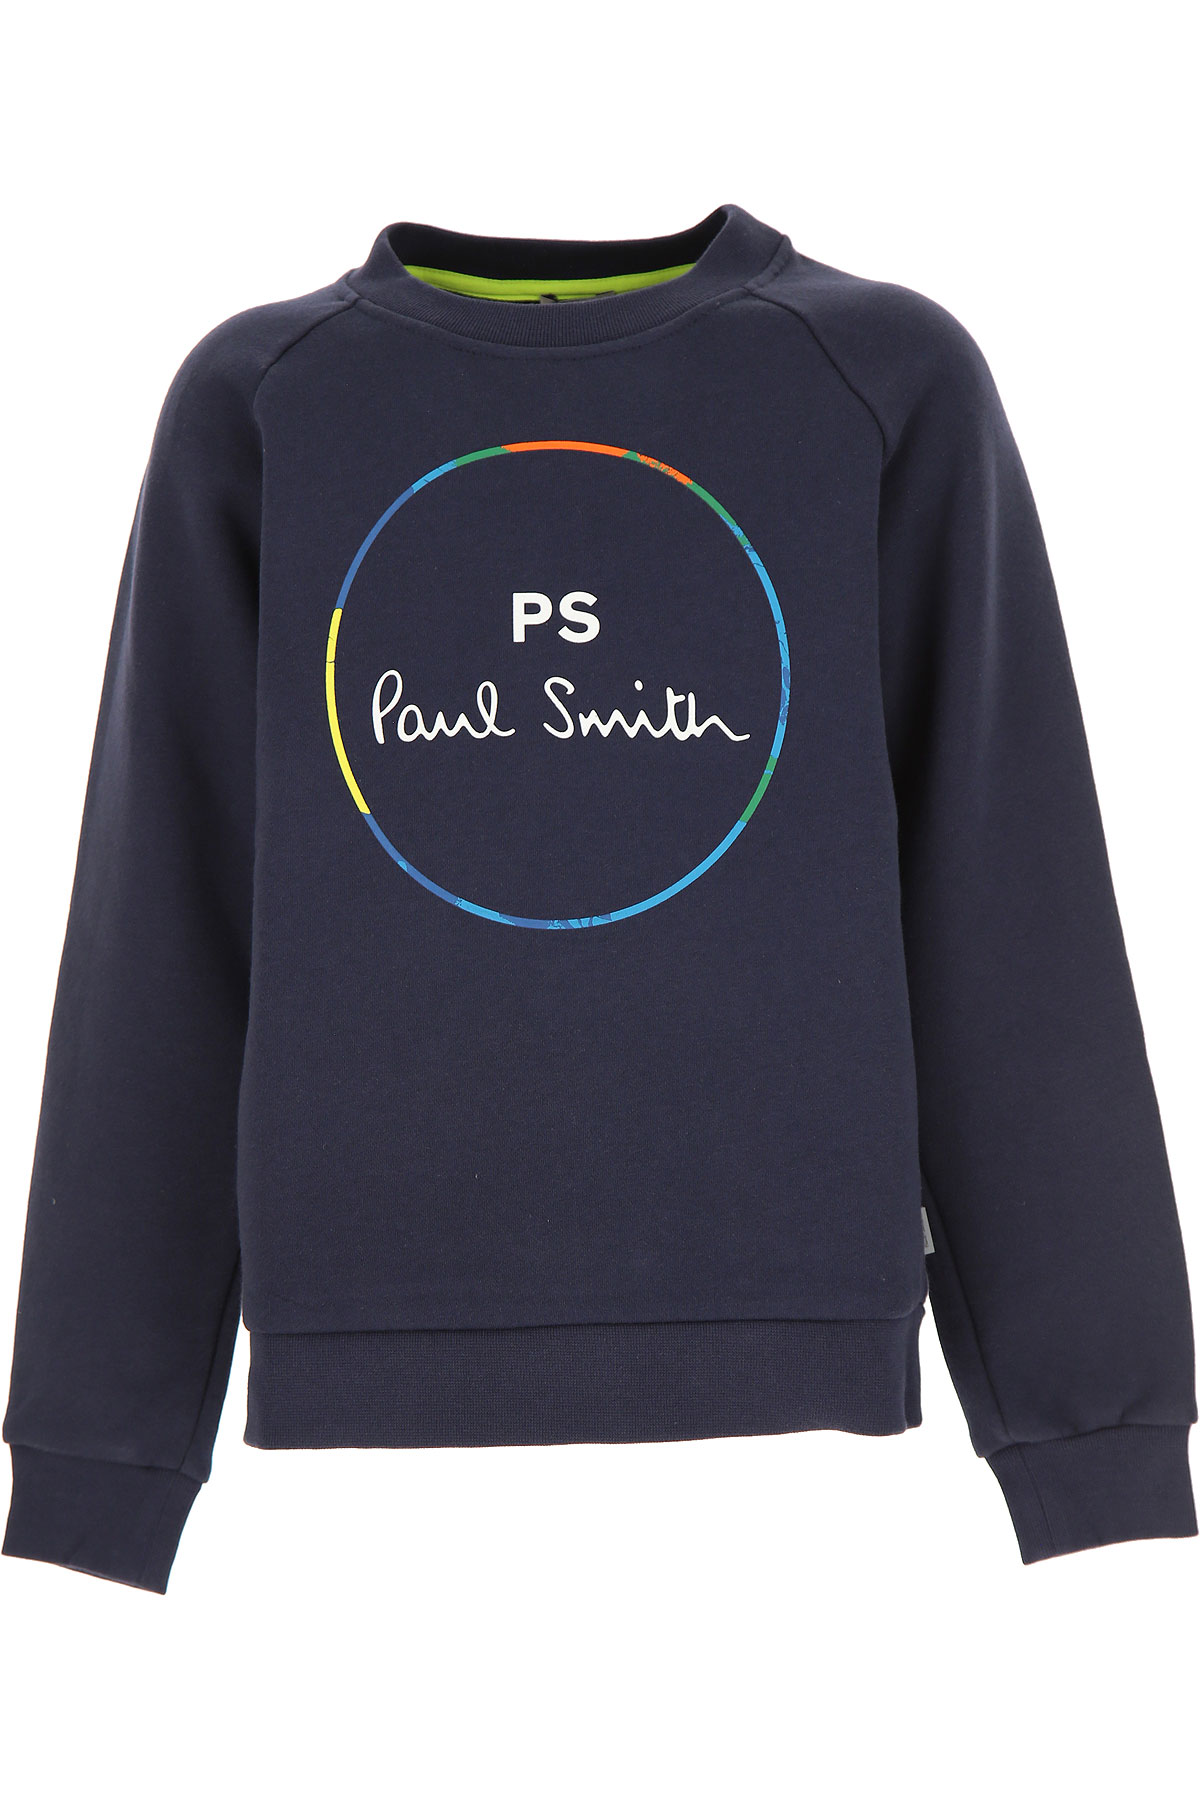 Paul Smith Kinder Sweatshirt & Kapuzenpullover für Jungen Günstig im Sale, Marine blau, Baumwolle, 2017, 10Y 12Y 14Y 2Y 3Y 4Y 5Y 6Y 8Y